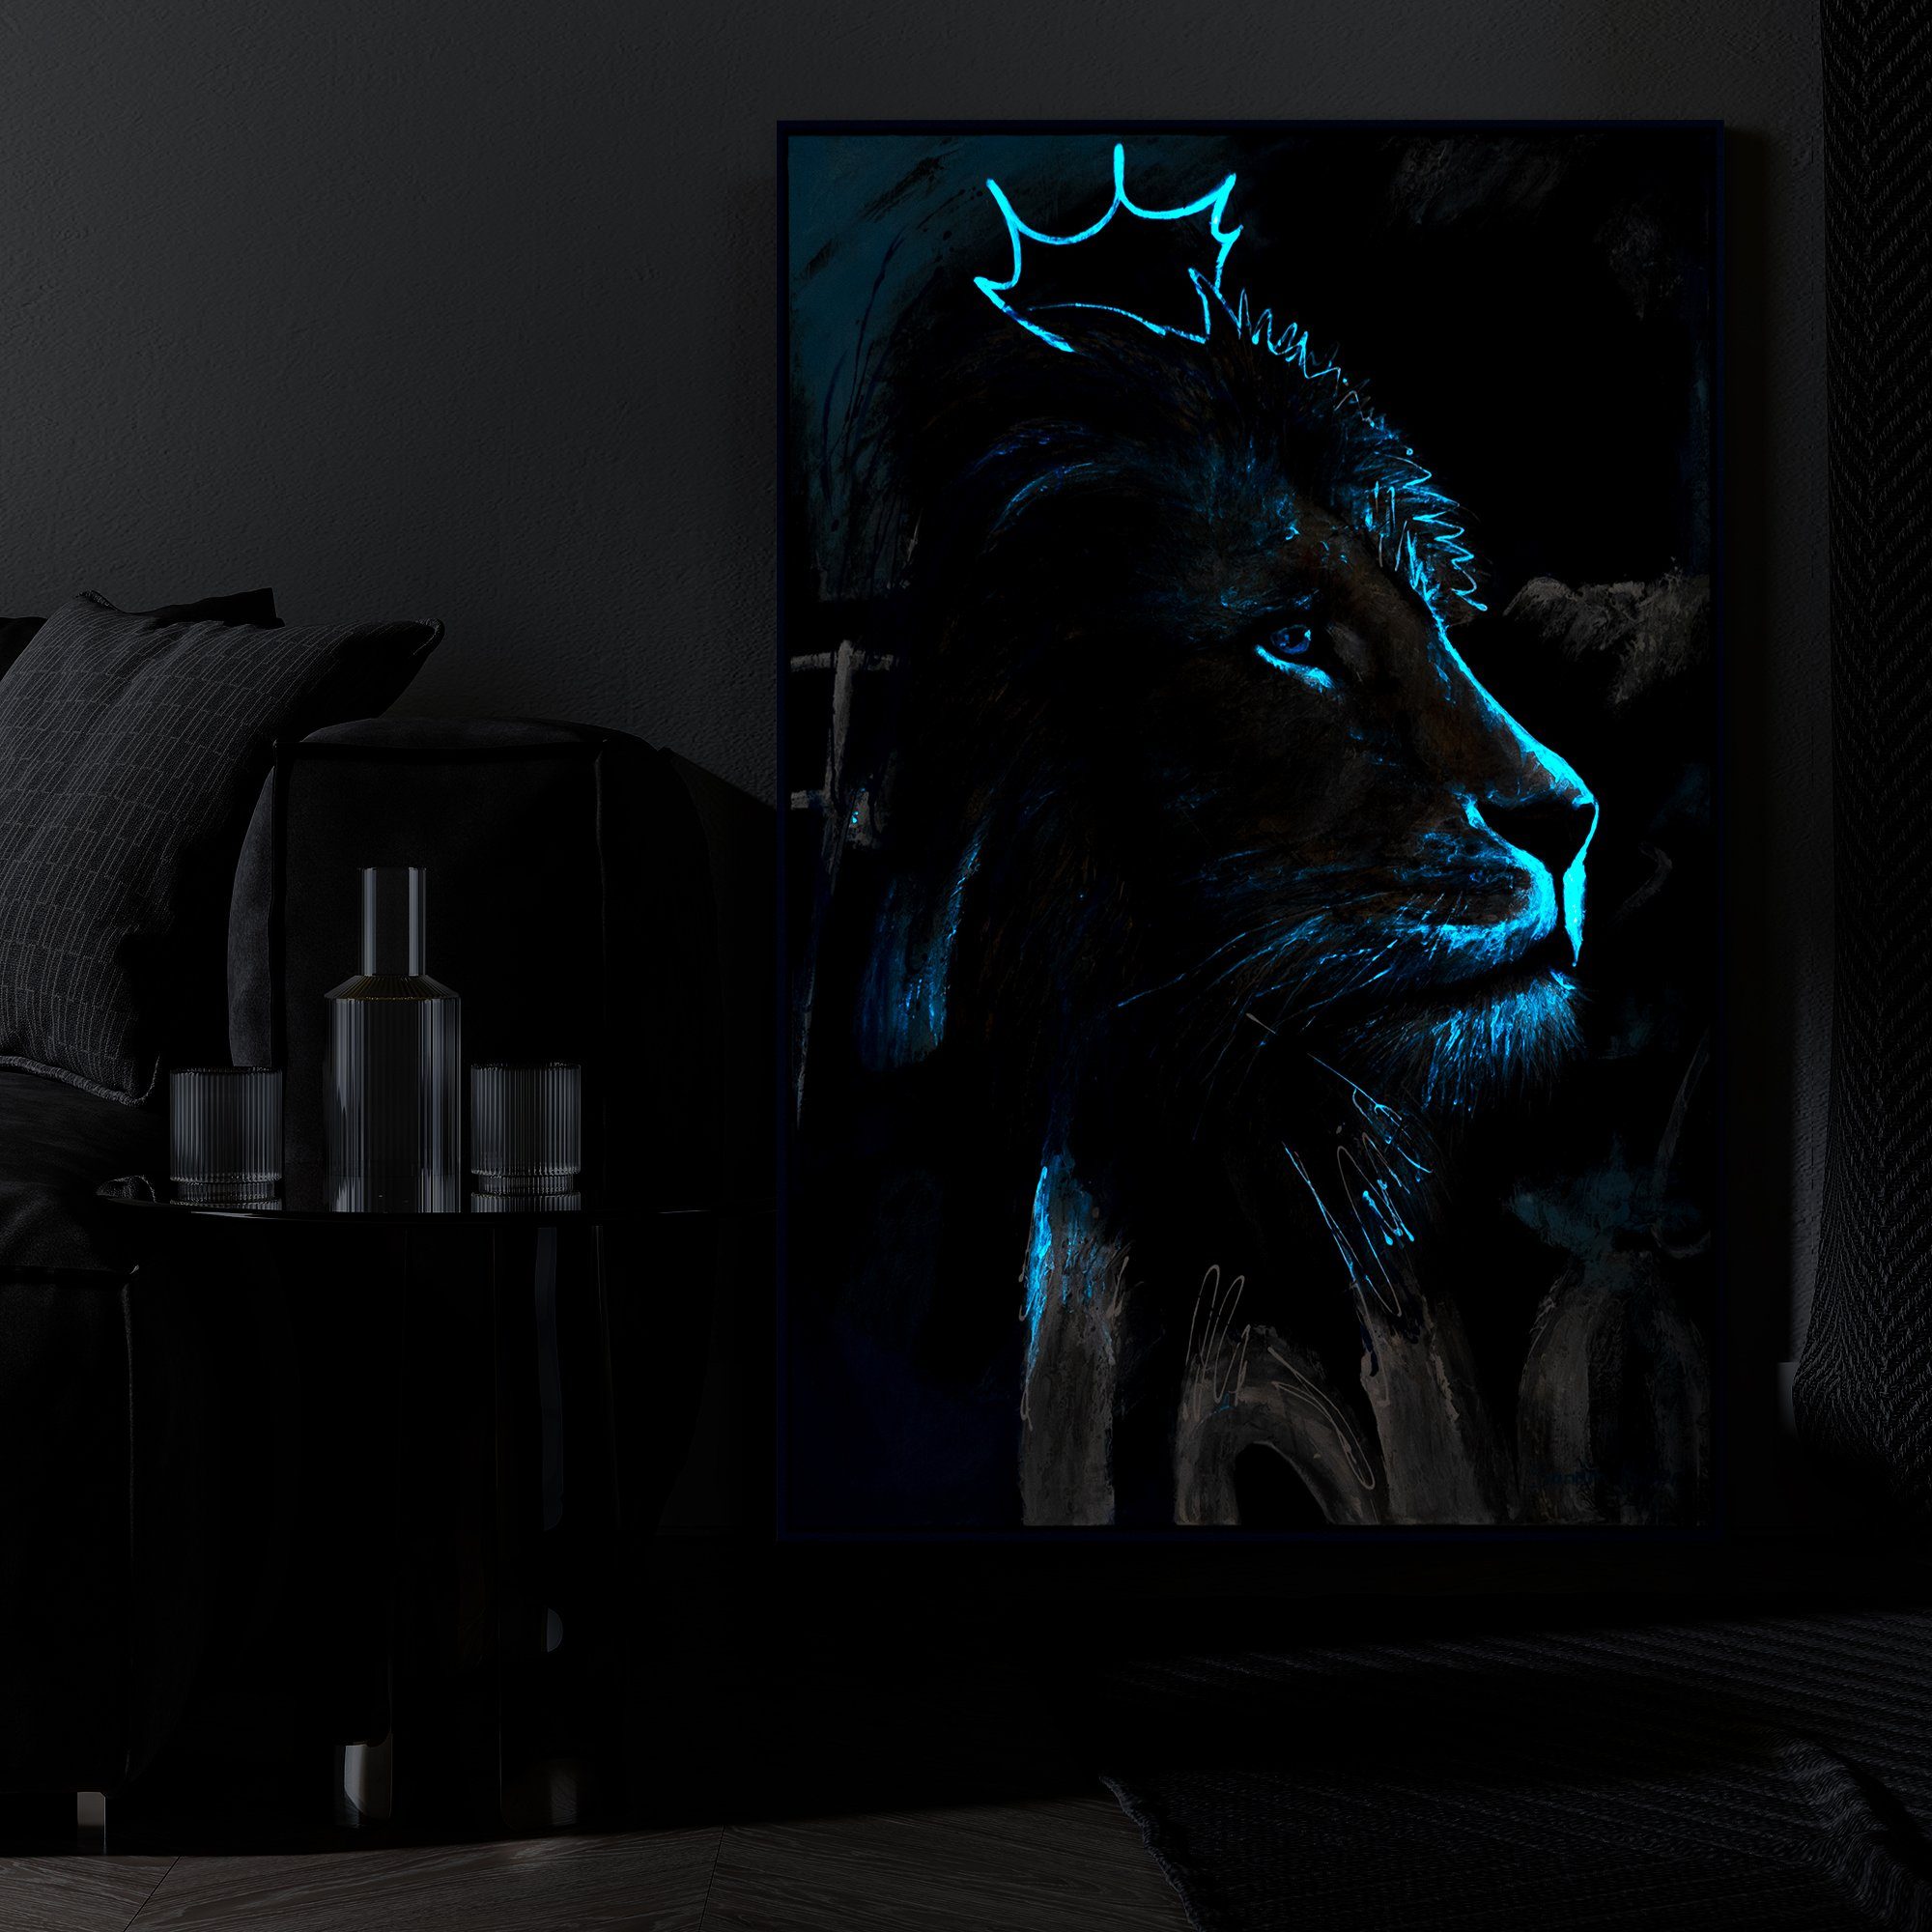 YS-Art Erwachen Kraft, Tiere Mit Rahmen Gemälde Blau in der